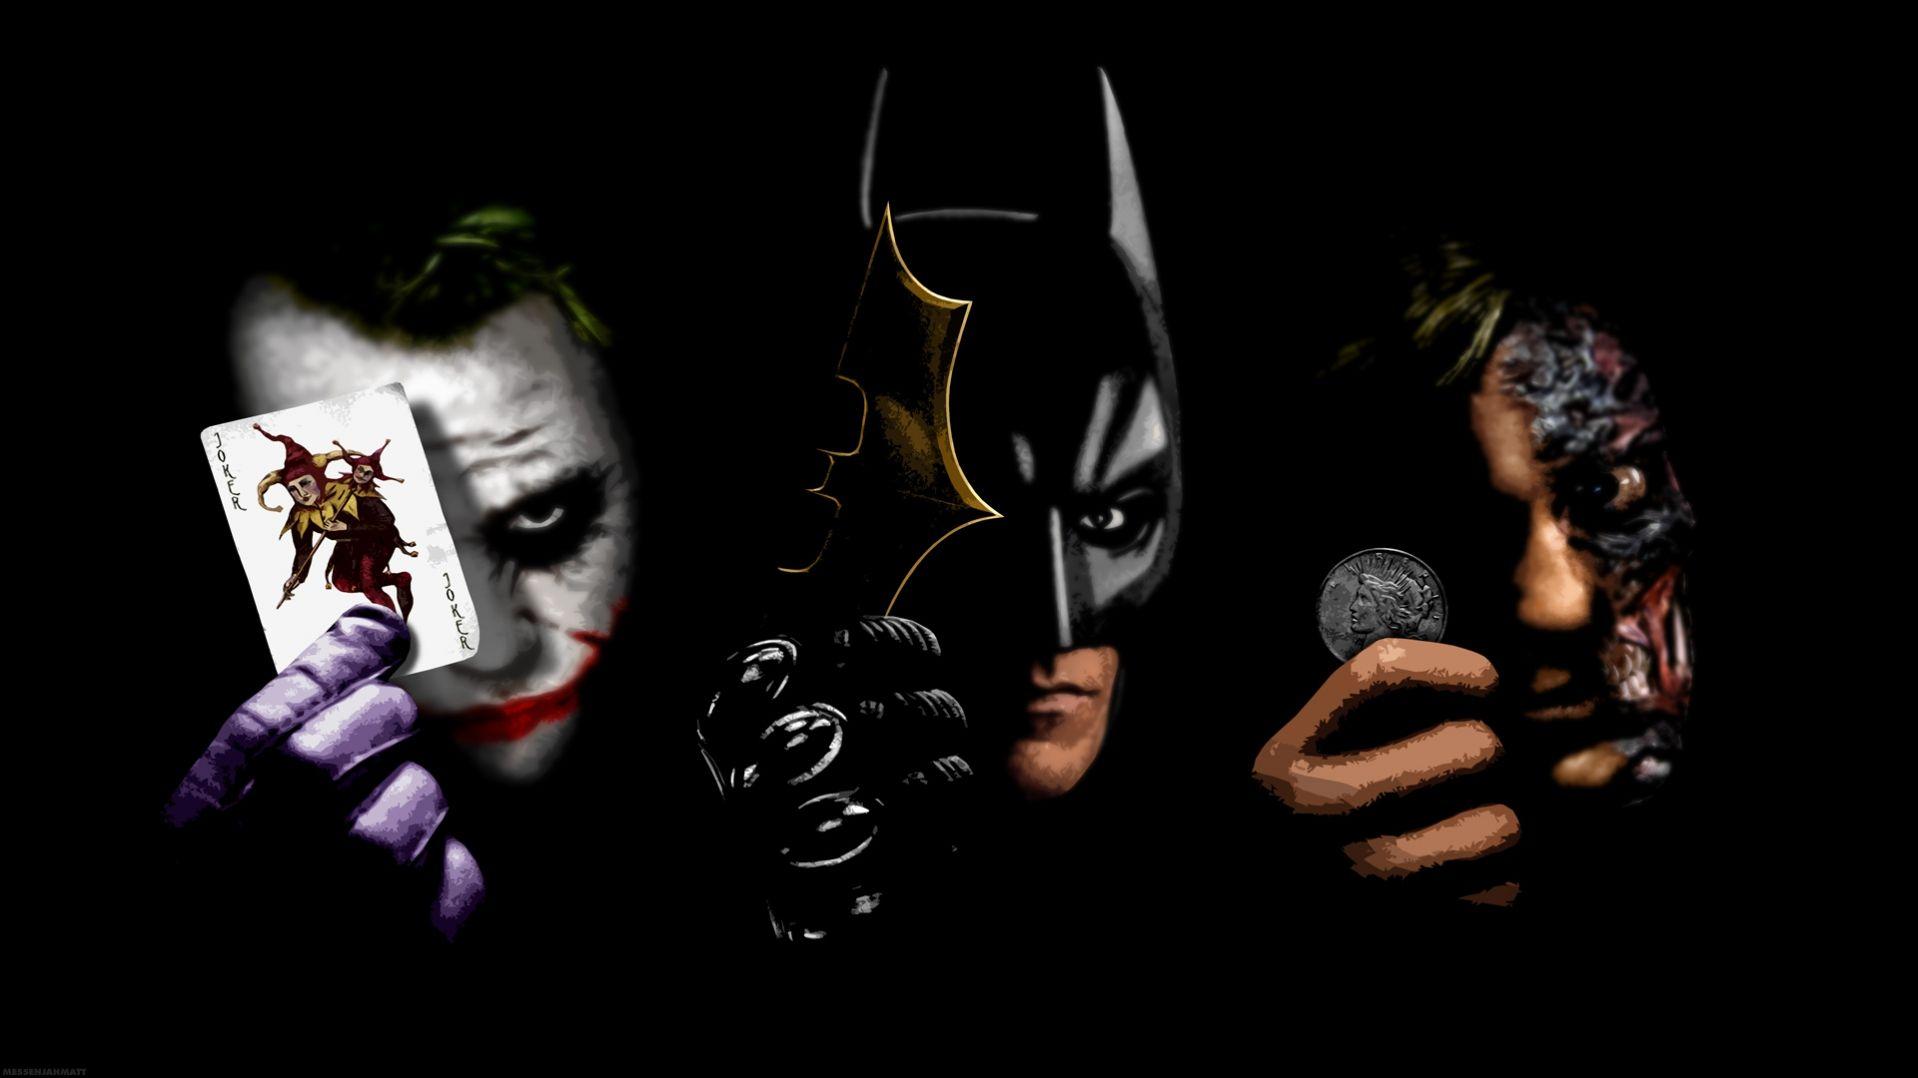 Two face , batman and joker HD Wallpaper. Batman wallpaper